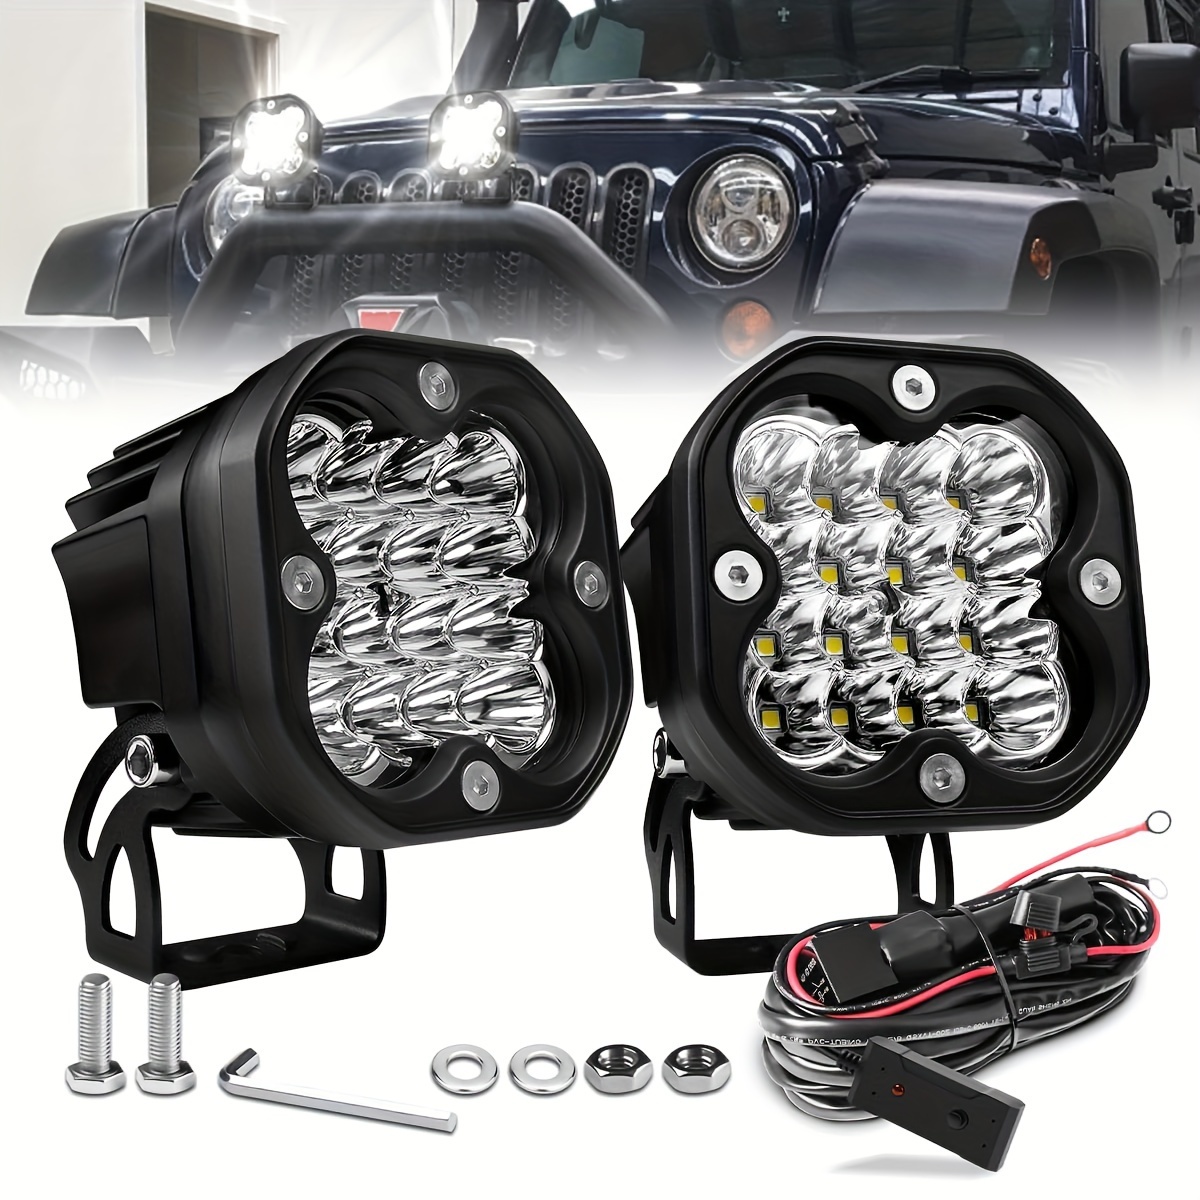 Kaufe 18LEDs Auto Modifizierte Scheinwerfer Auto Arbeit Licht Spot Lichter  Fahren Nebel Lampe Für Auto SUV Offroad Lkw